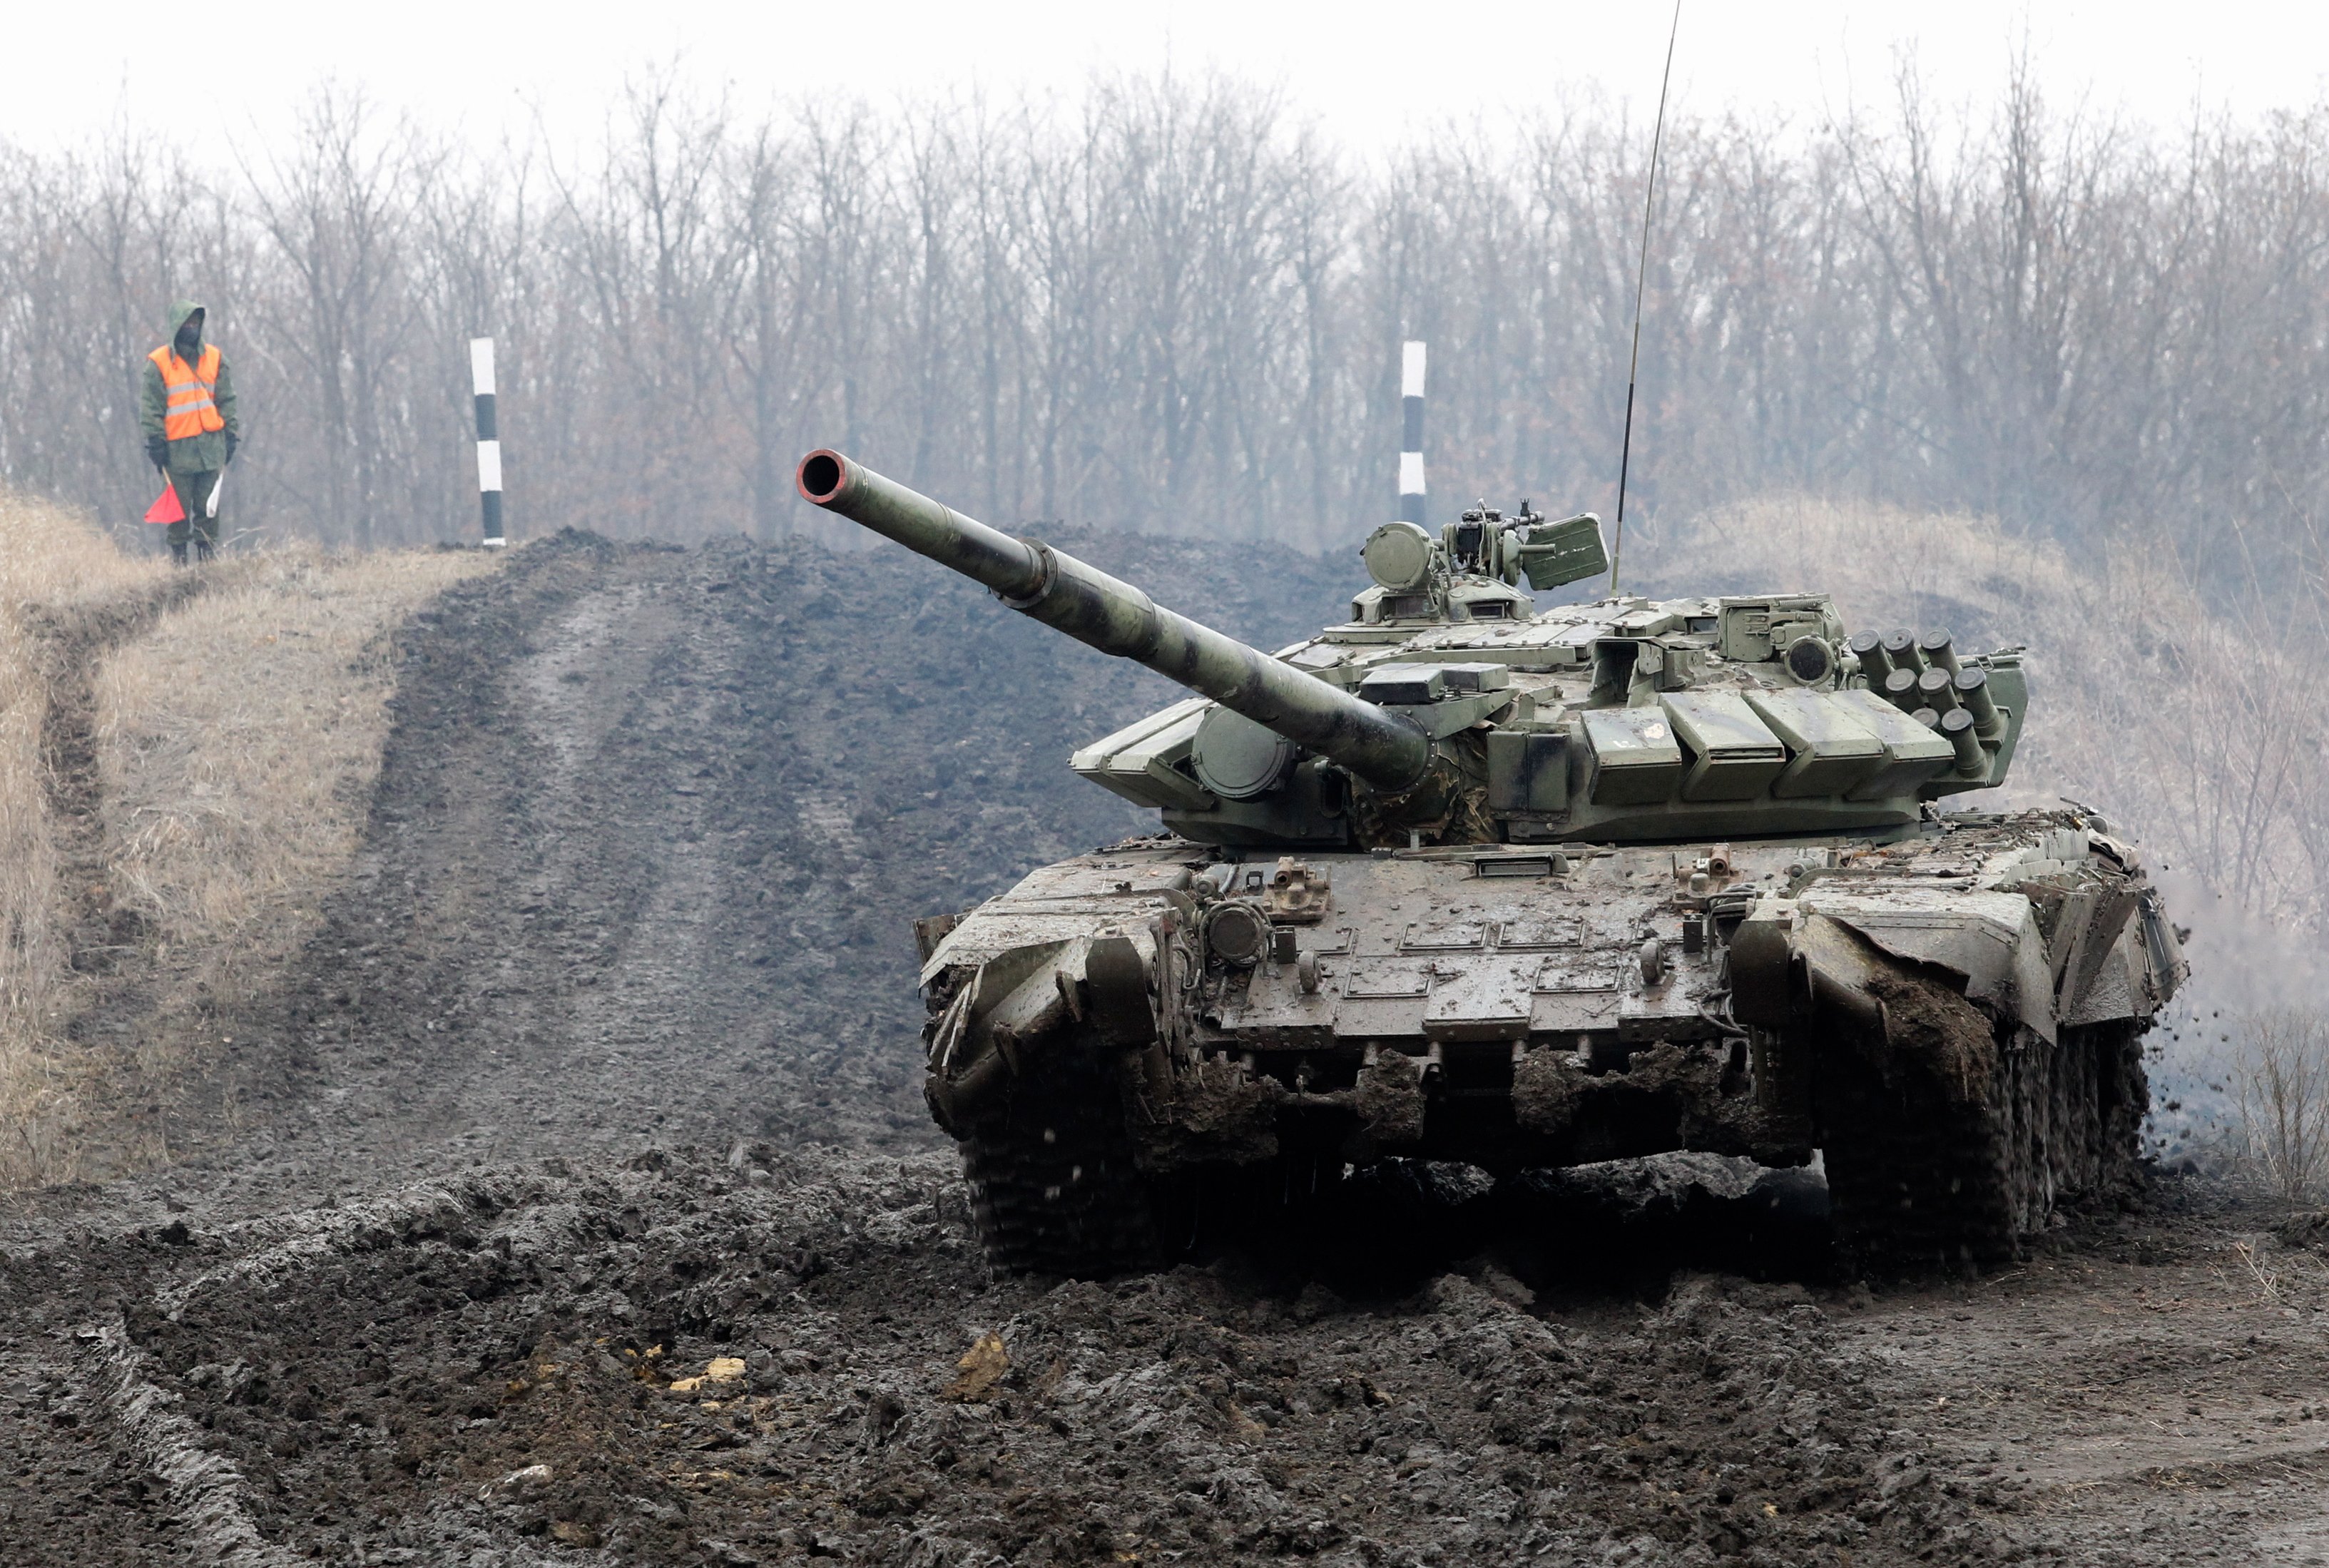 L'exèrcit rus s'enforteix al Donbass, però les tropes ucraïneses resisteixen